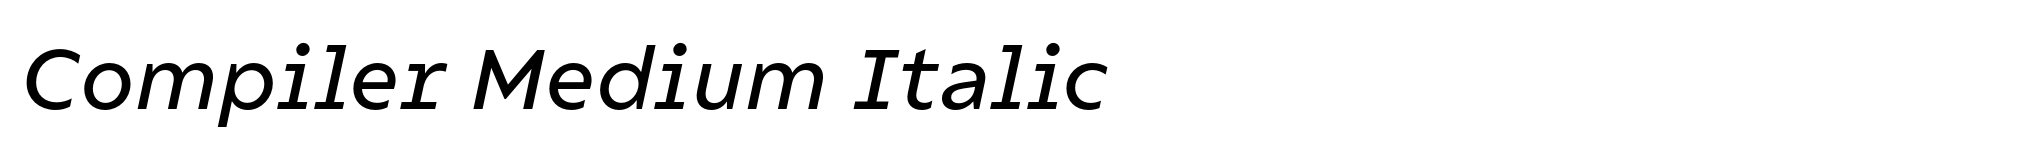 Compiler Medium Italic image